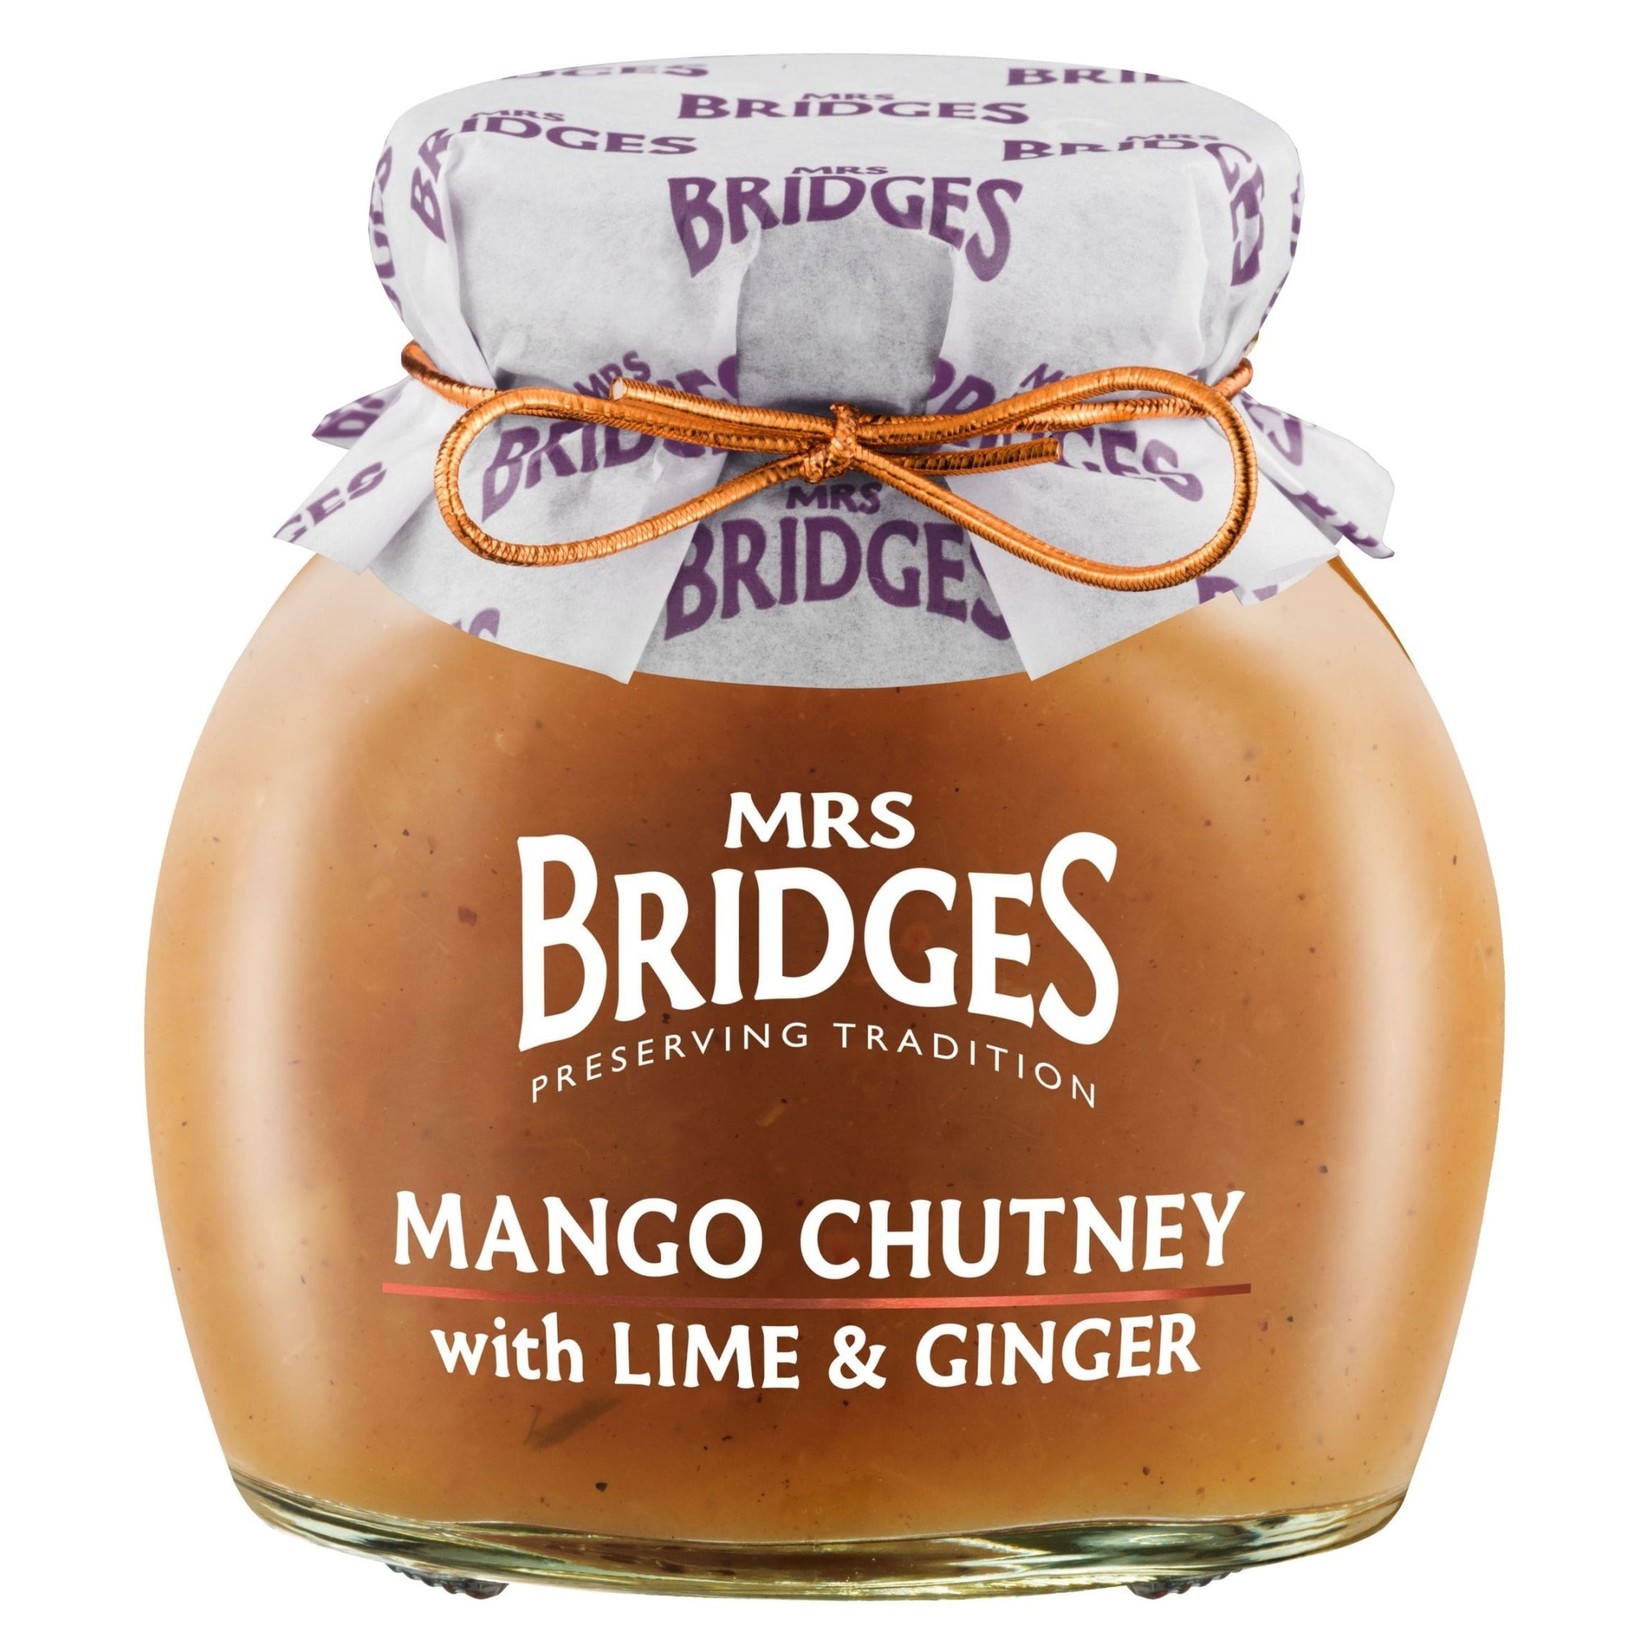 MRS BRIDGES MRS BRIDGES Mango Chutney with Lime & Ginger 290g